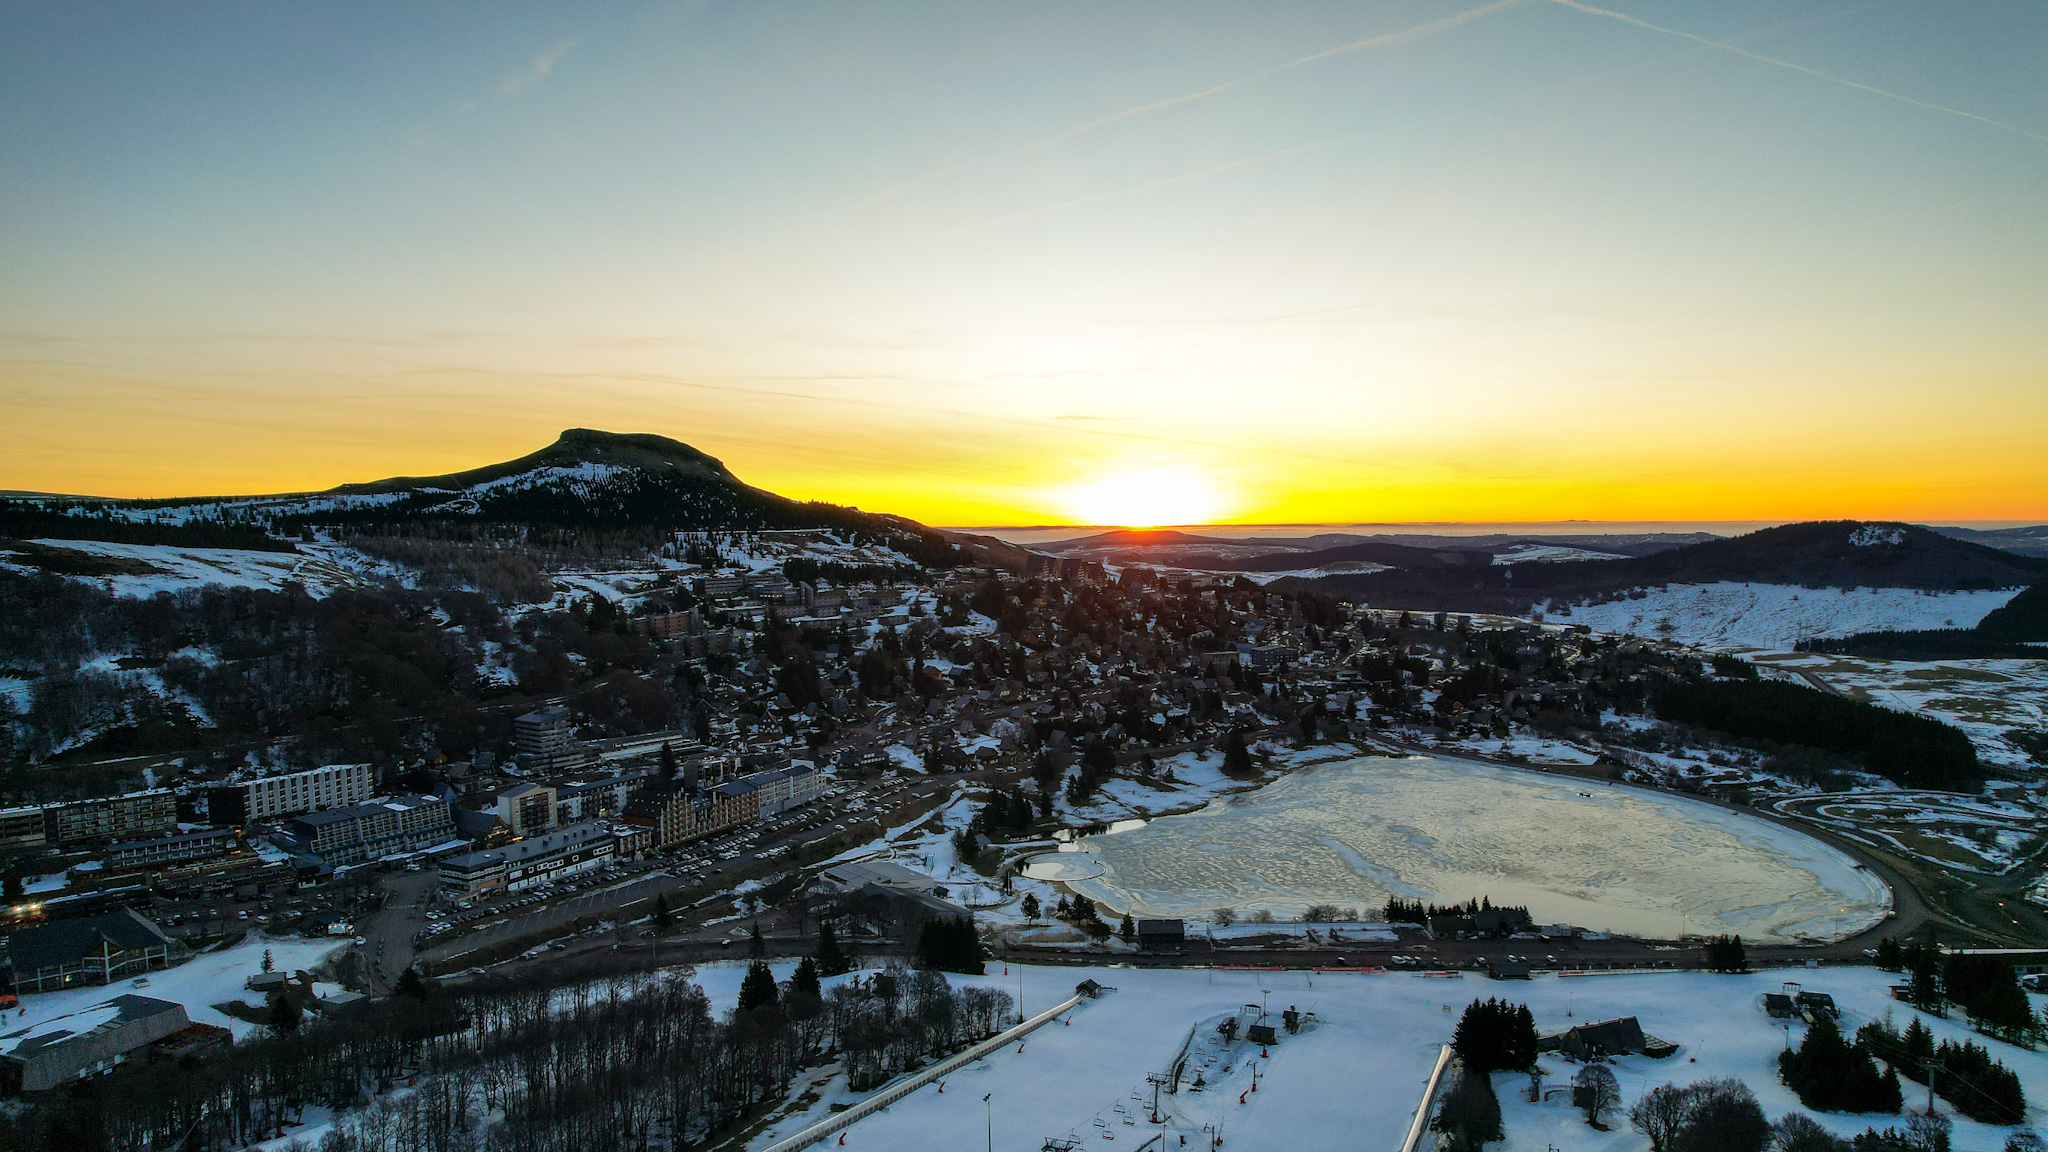 Morning Sun over the sleepy Super Besse Ski Resort